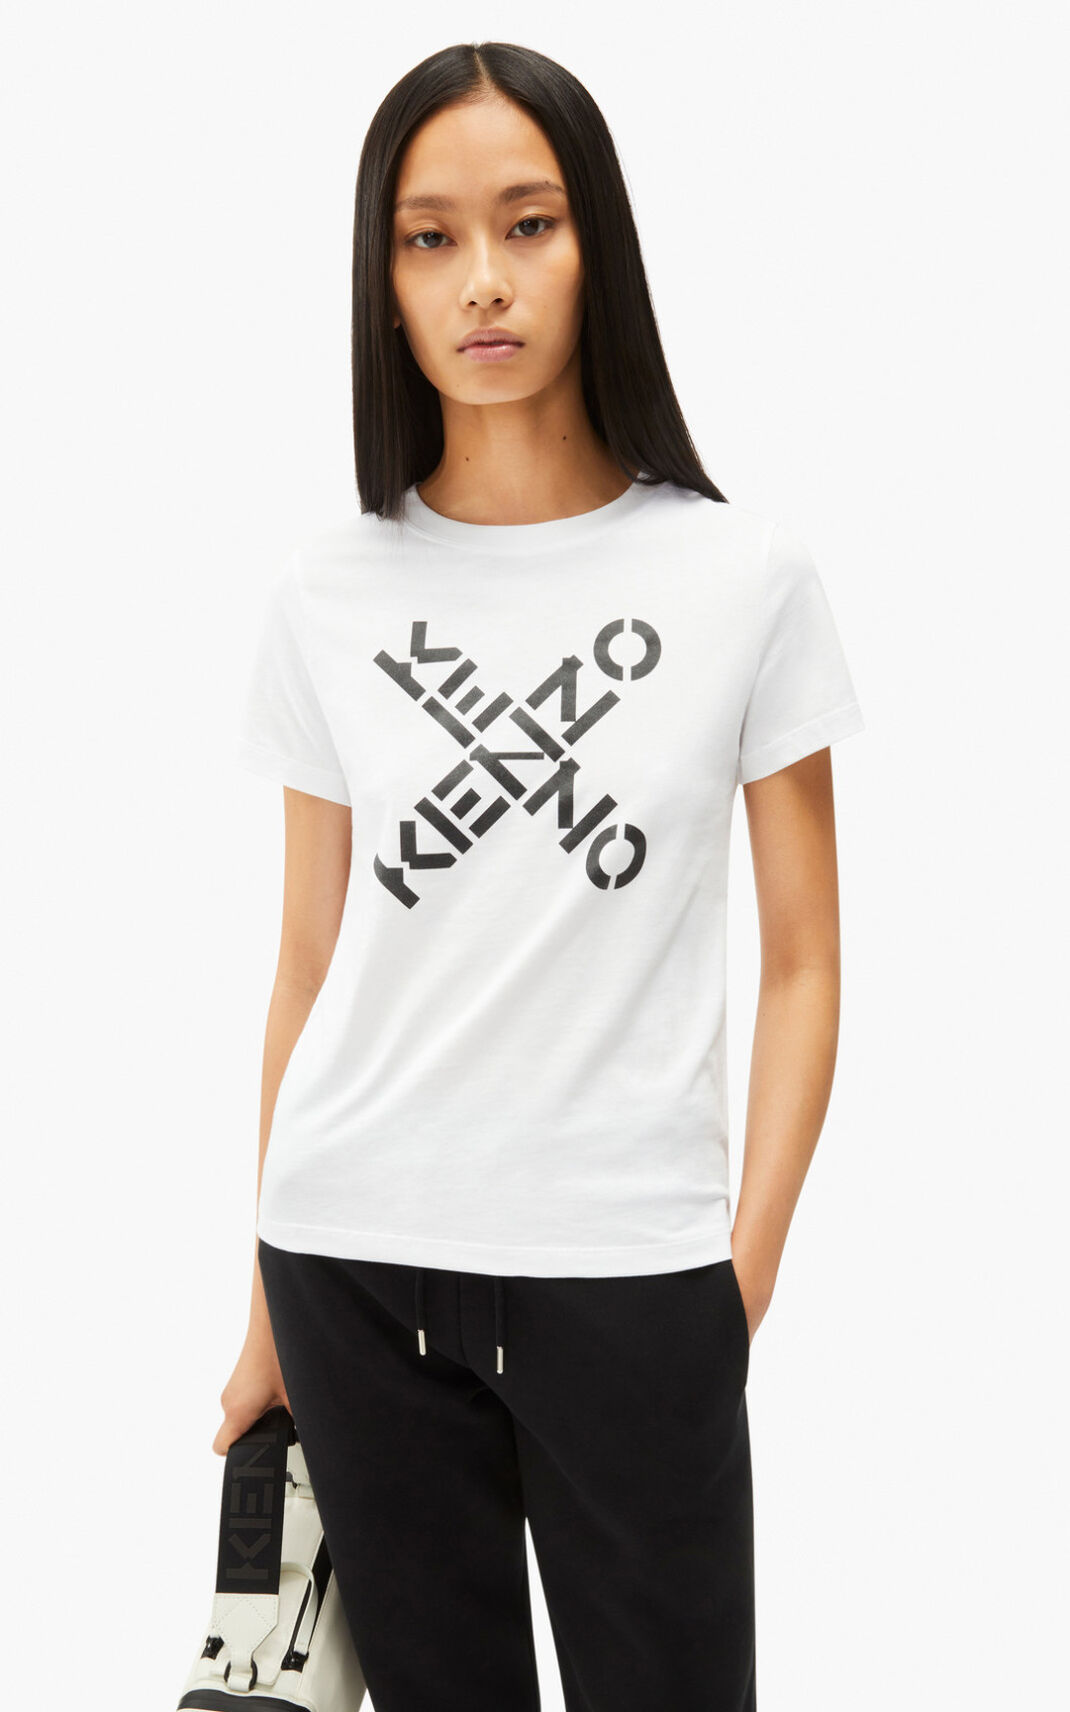 Camisetas Kenzo Sport Big X Mujer Blancas - SKU.1270927